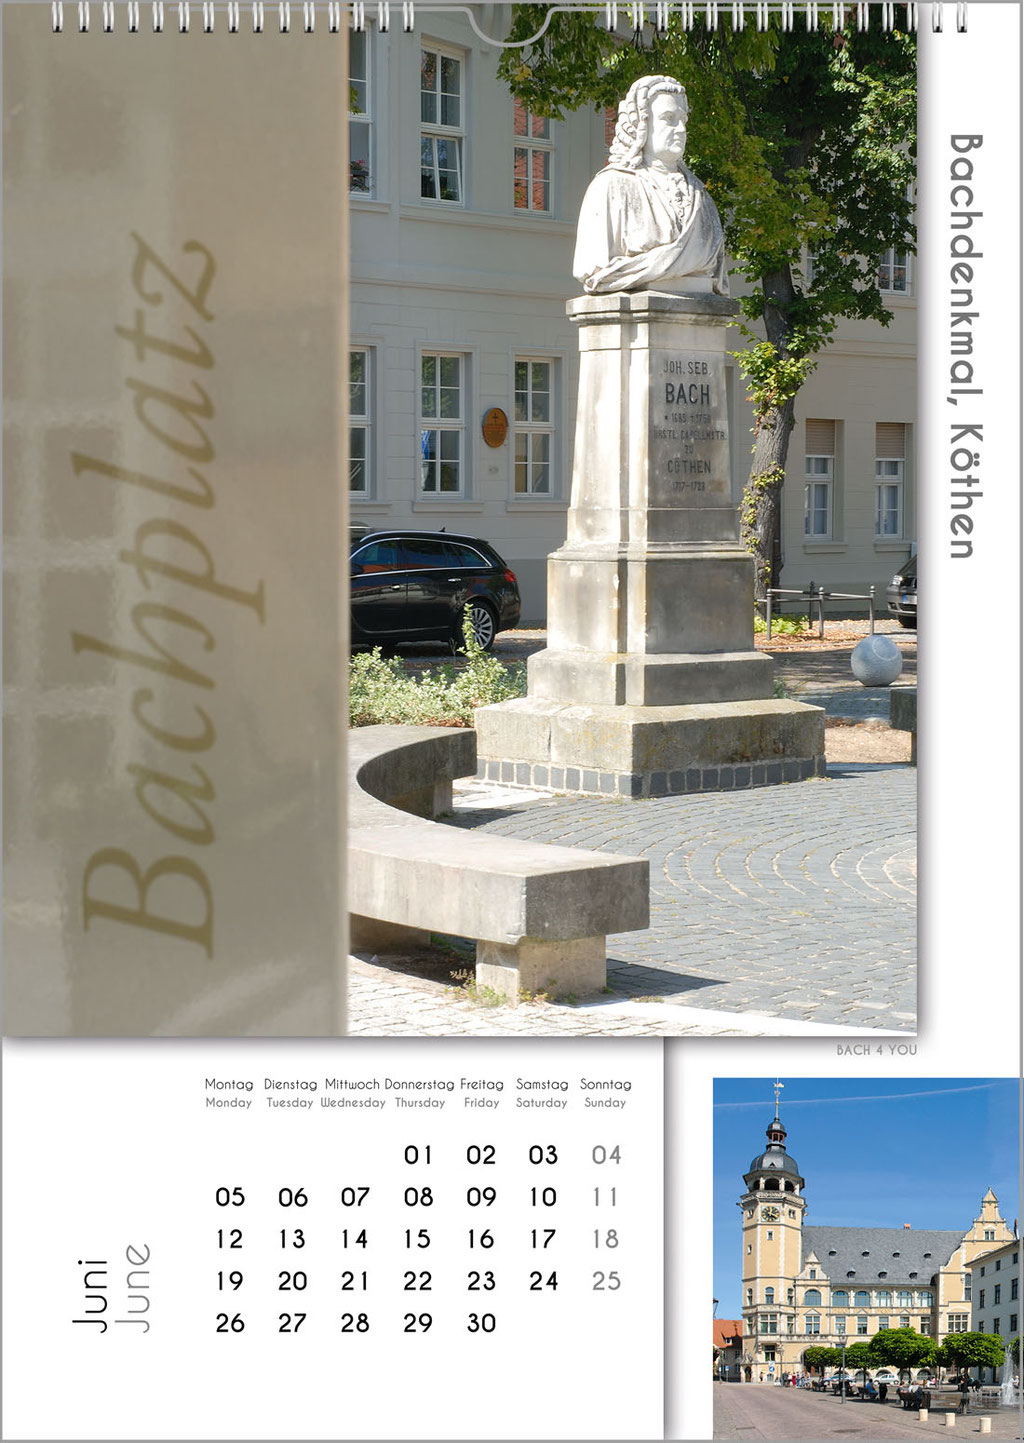 Der Bachstädte und Bachorte Kalender ... Bach-Kalender sind Musikkalender und Musik-Geschenke.